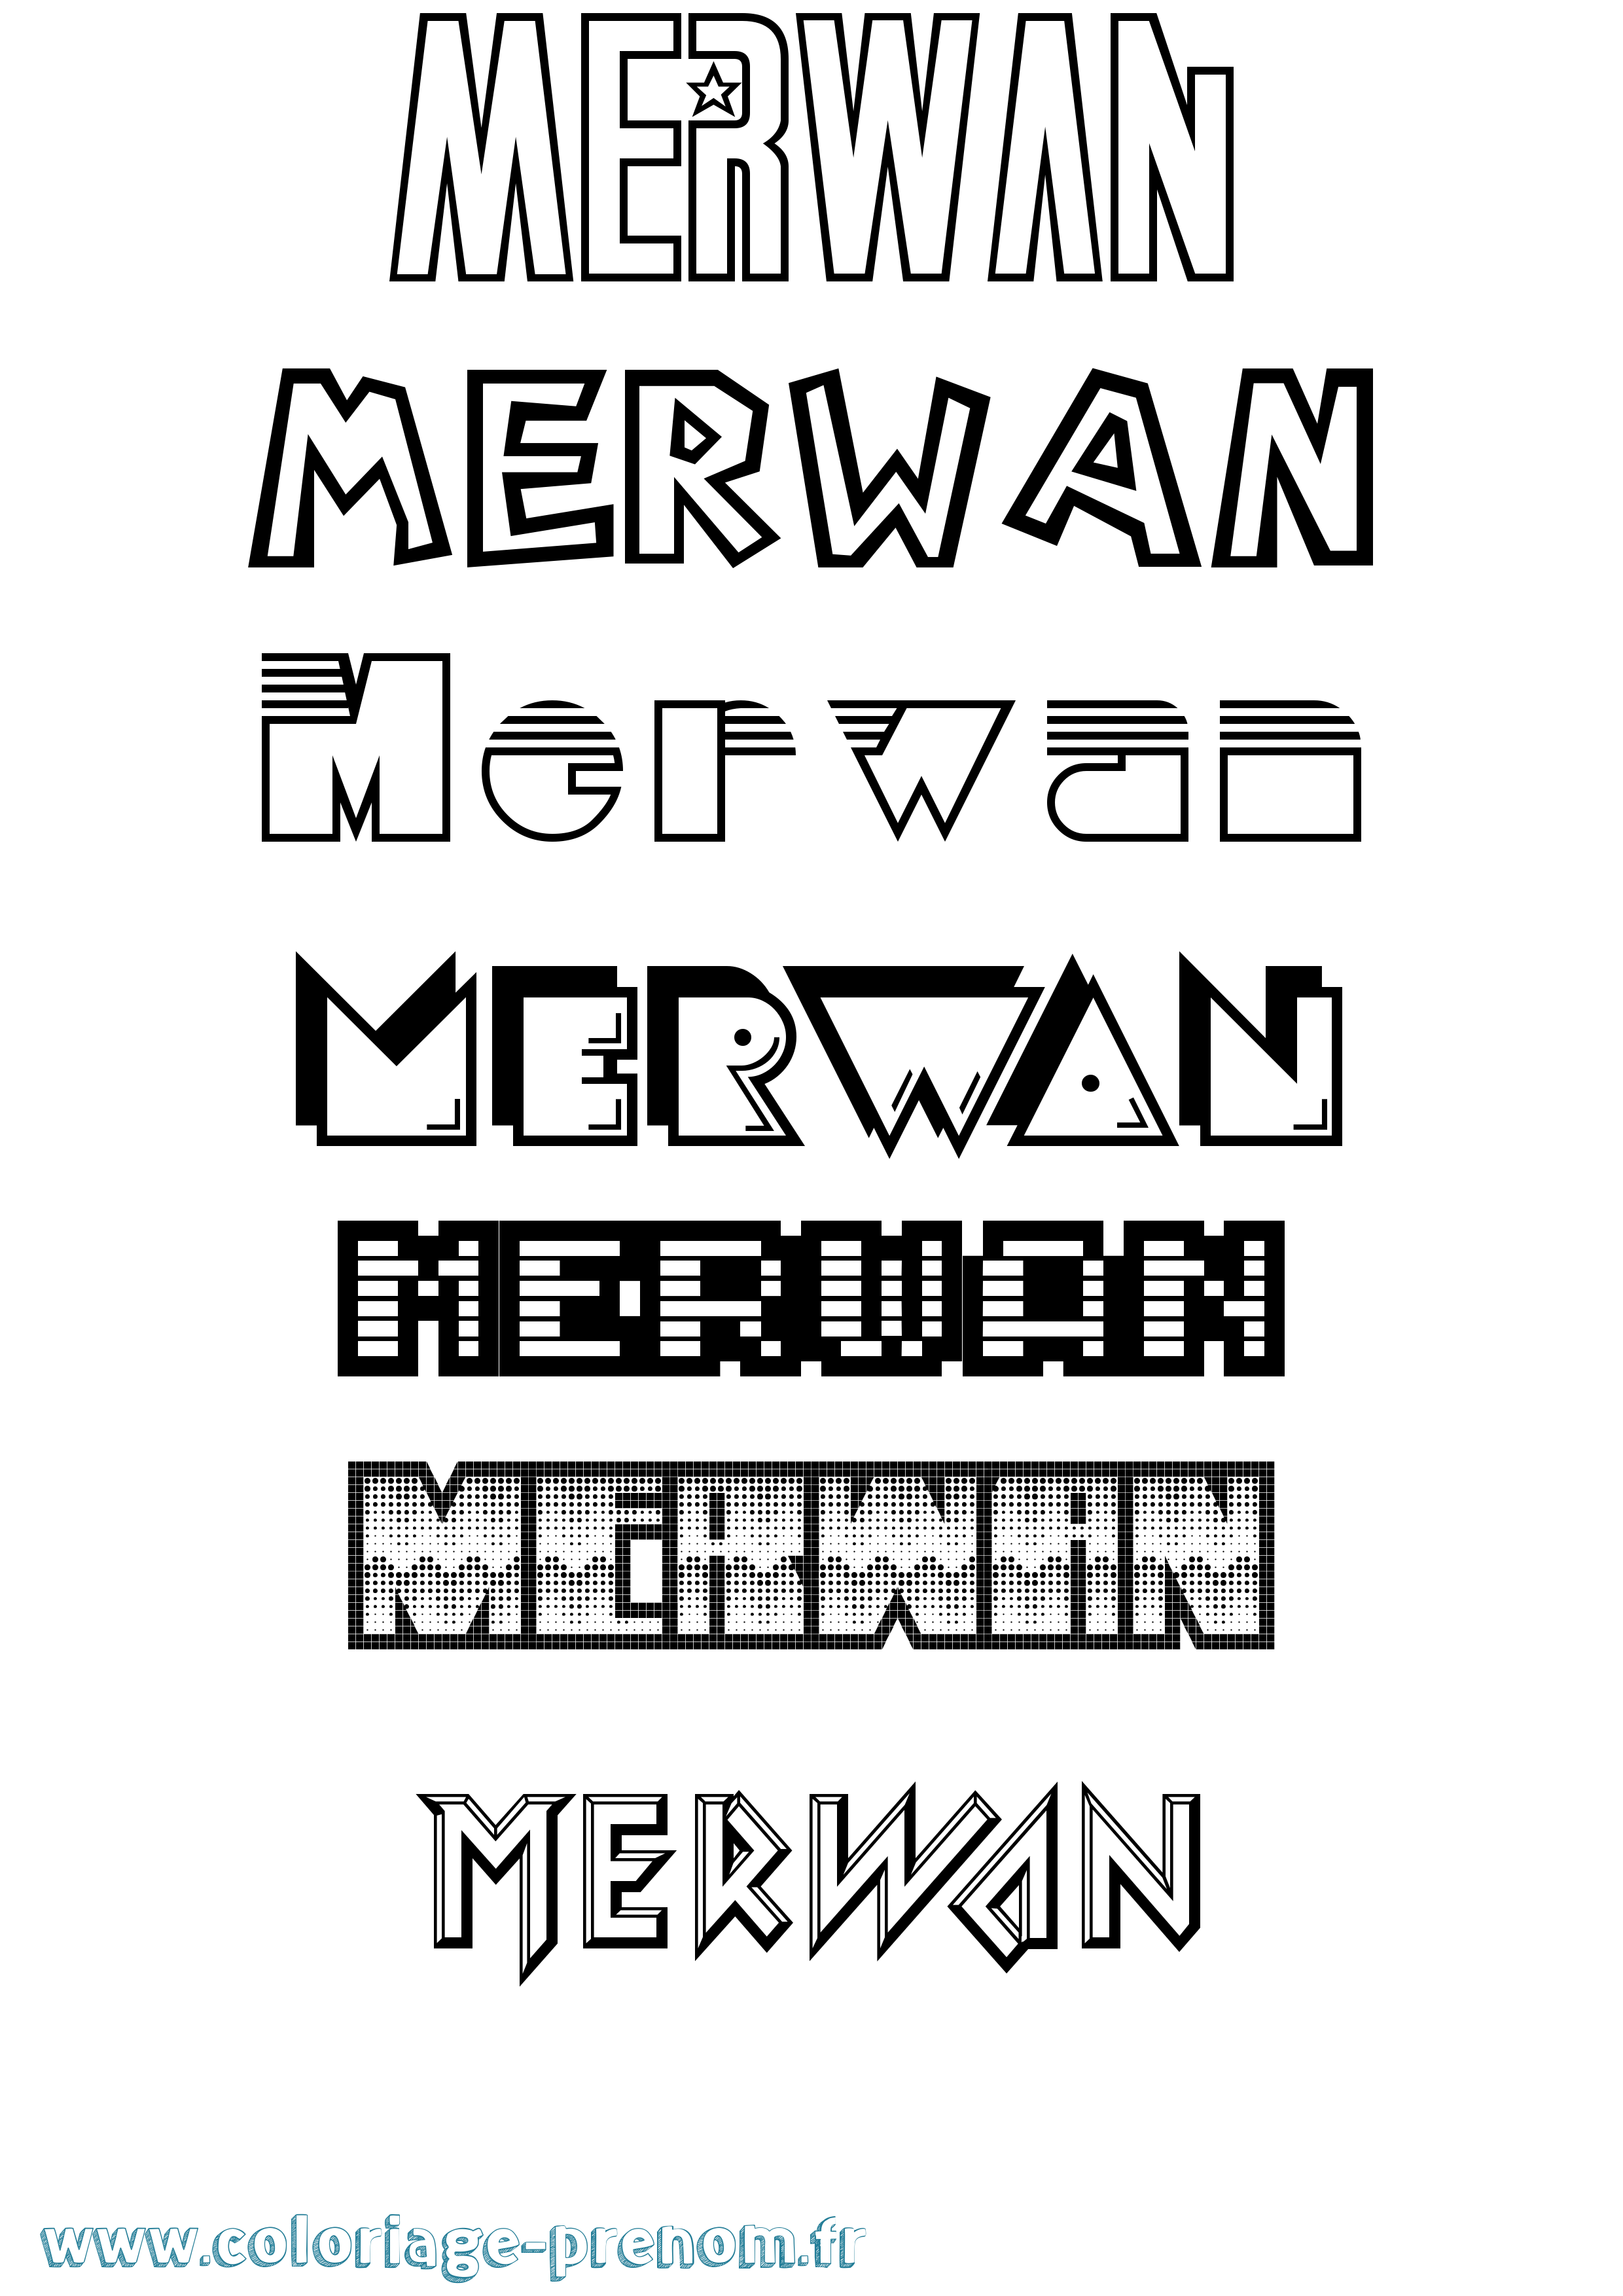 Coloriage prénom Merwan Jeux Vidéos